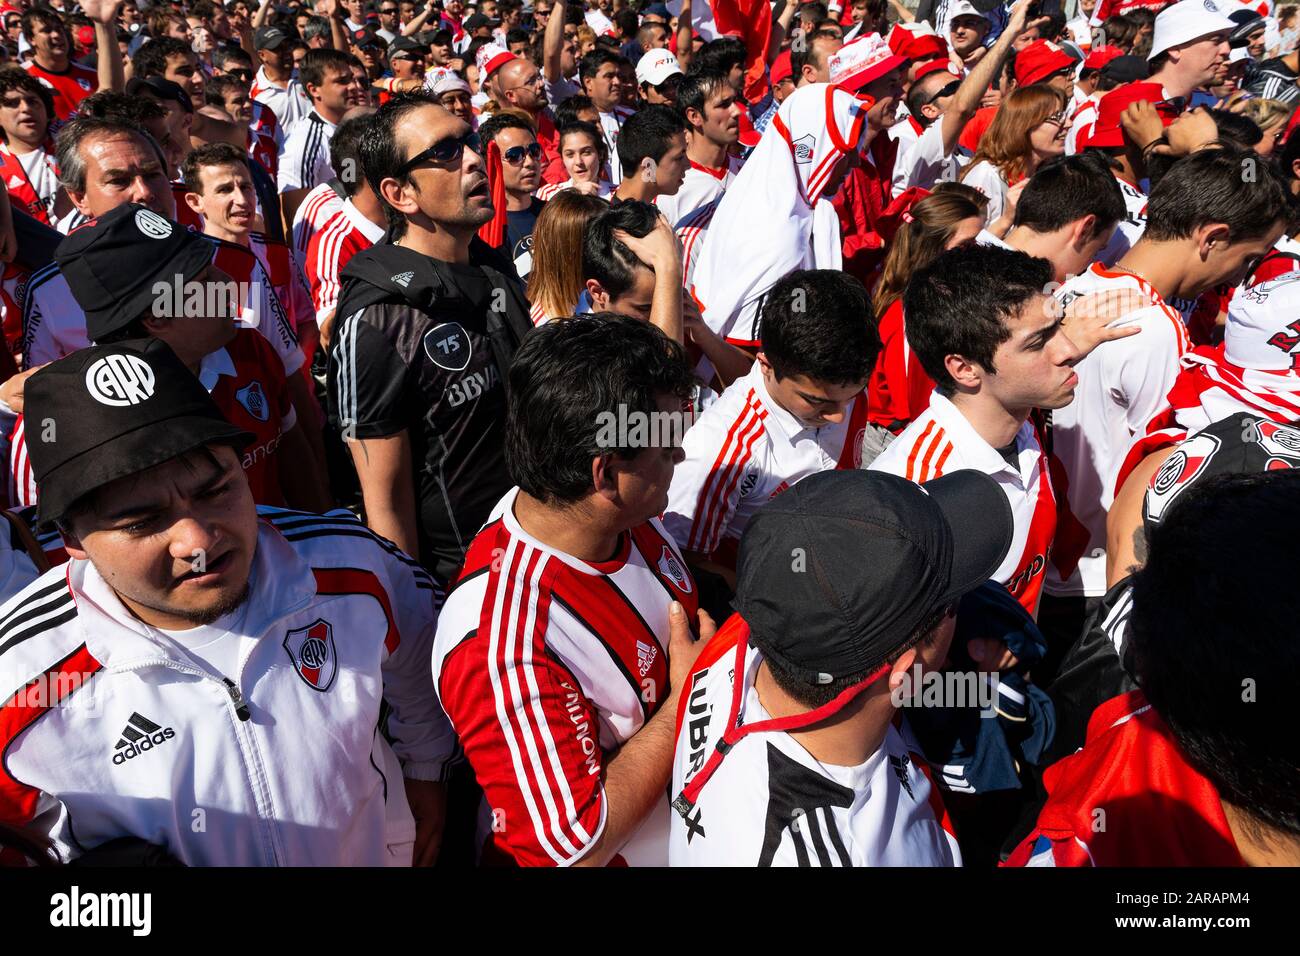 Buenos Aires, Argentinien - Oktober 6, 2013: River Plate Anhänger warten das Estadio Monumental Antonio Vespucio Liberti für ein Fußball-Spiel in t eingeben Stockfoto